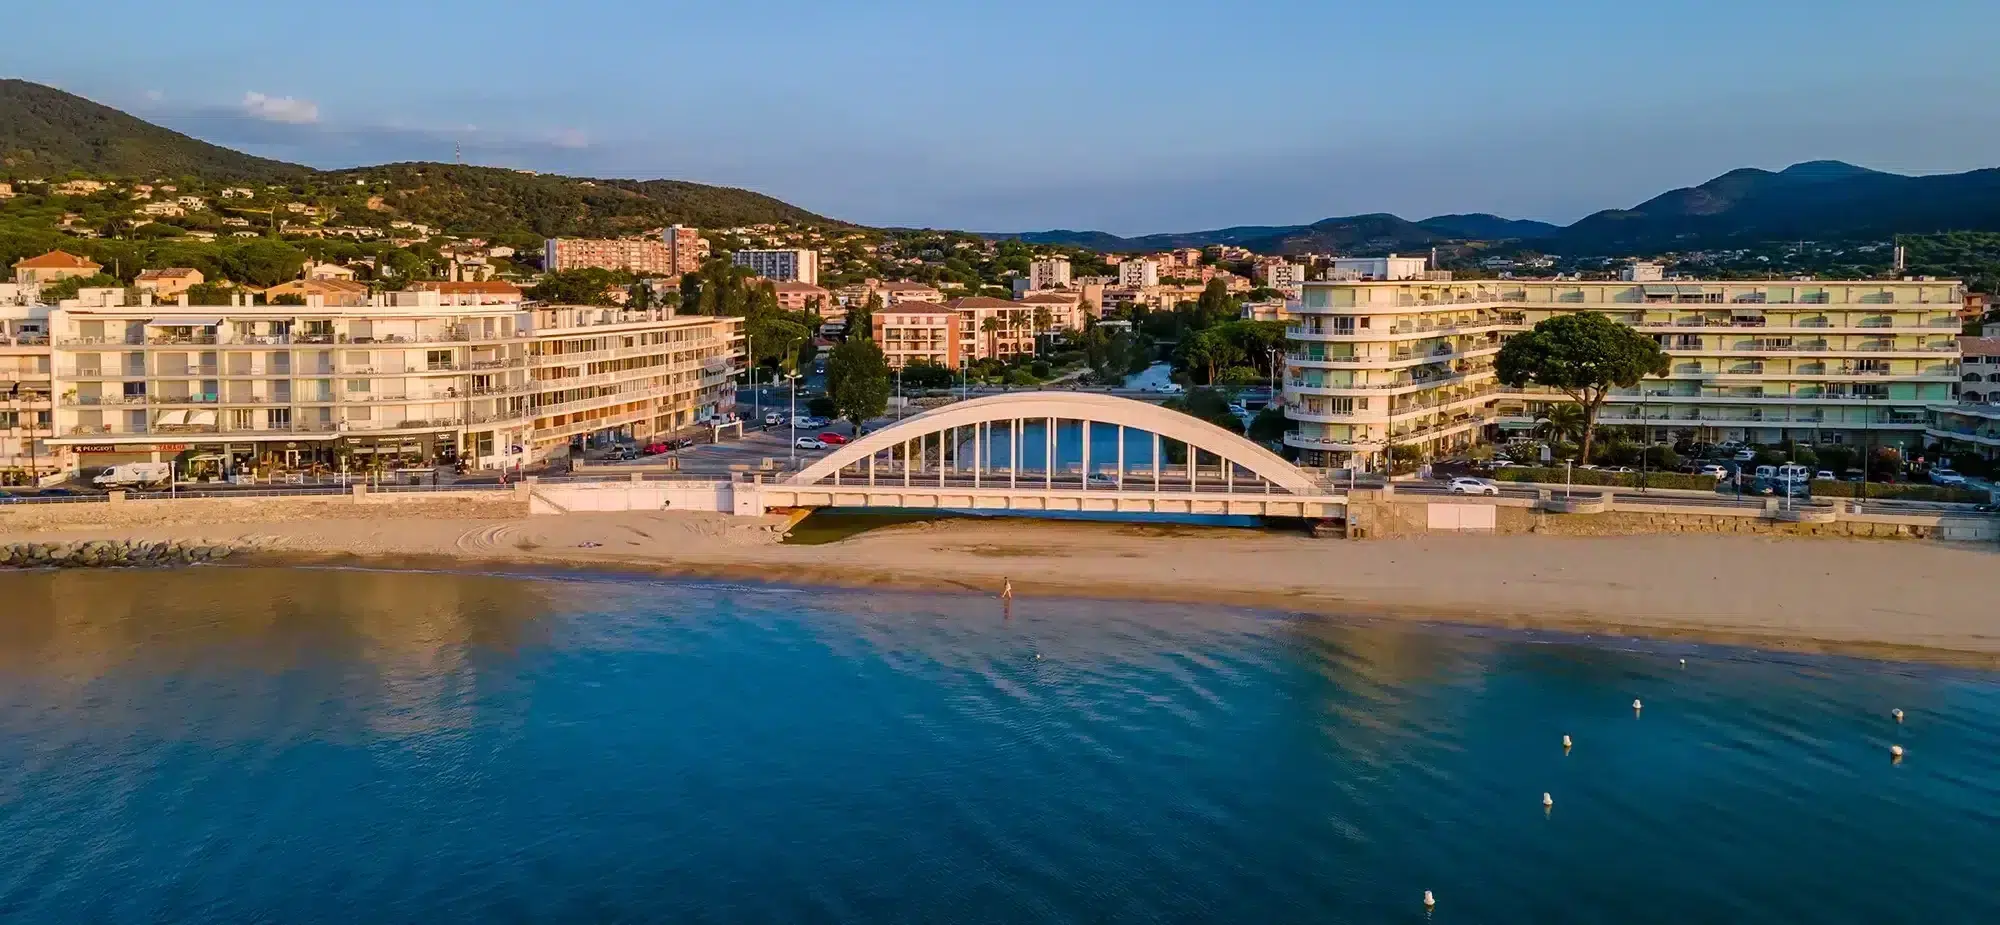 Vue aerienne Sainte Maxime front de mer pont celebre Cote dAzur Sud France